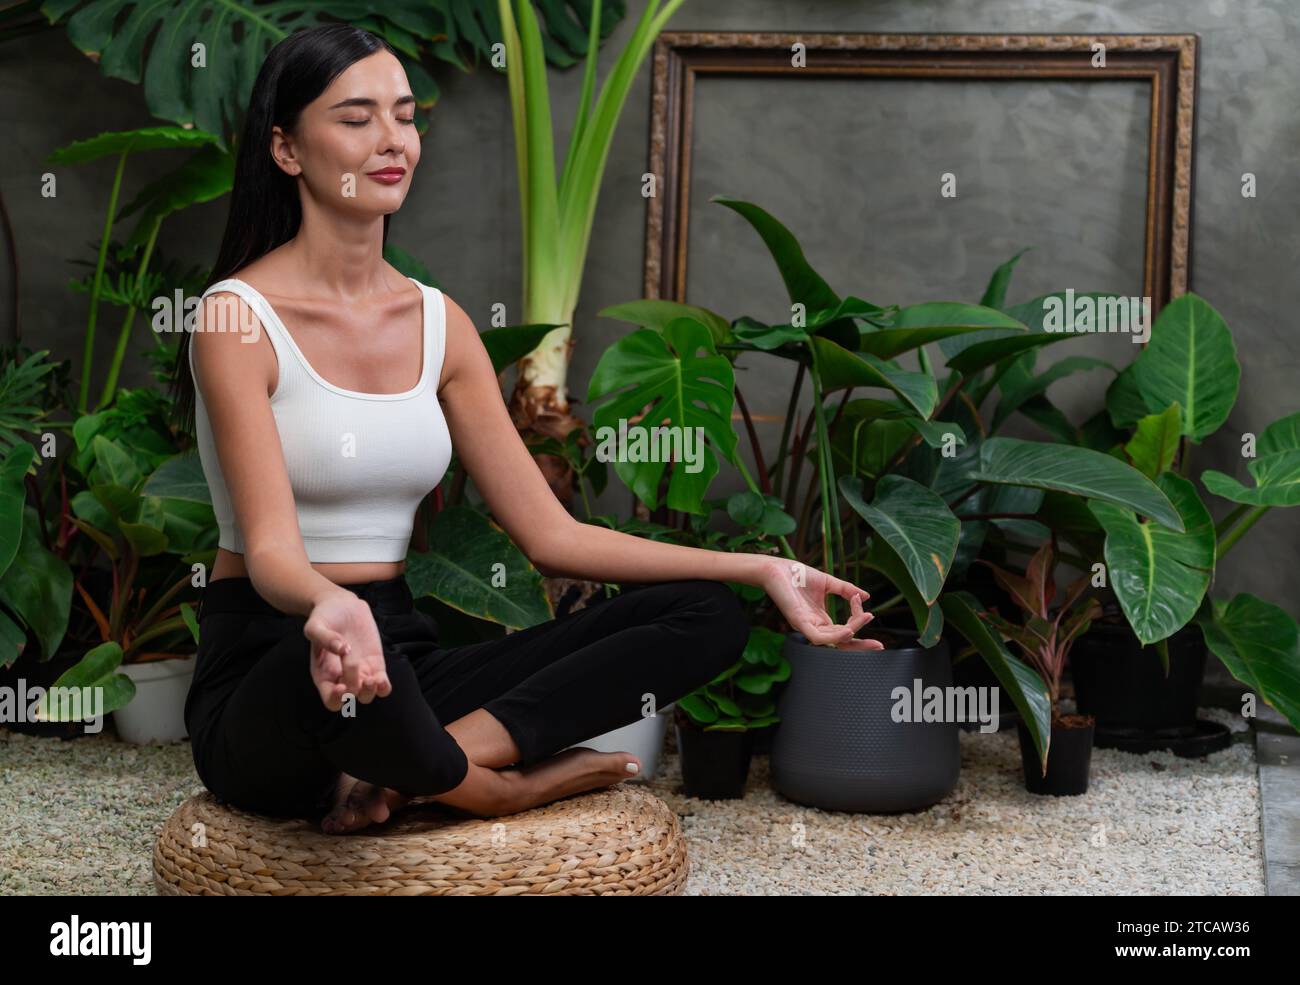 Female Doing Yoga Poses On Sunny Morning In The Green Garden Stock